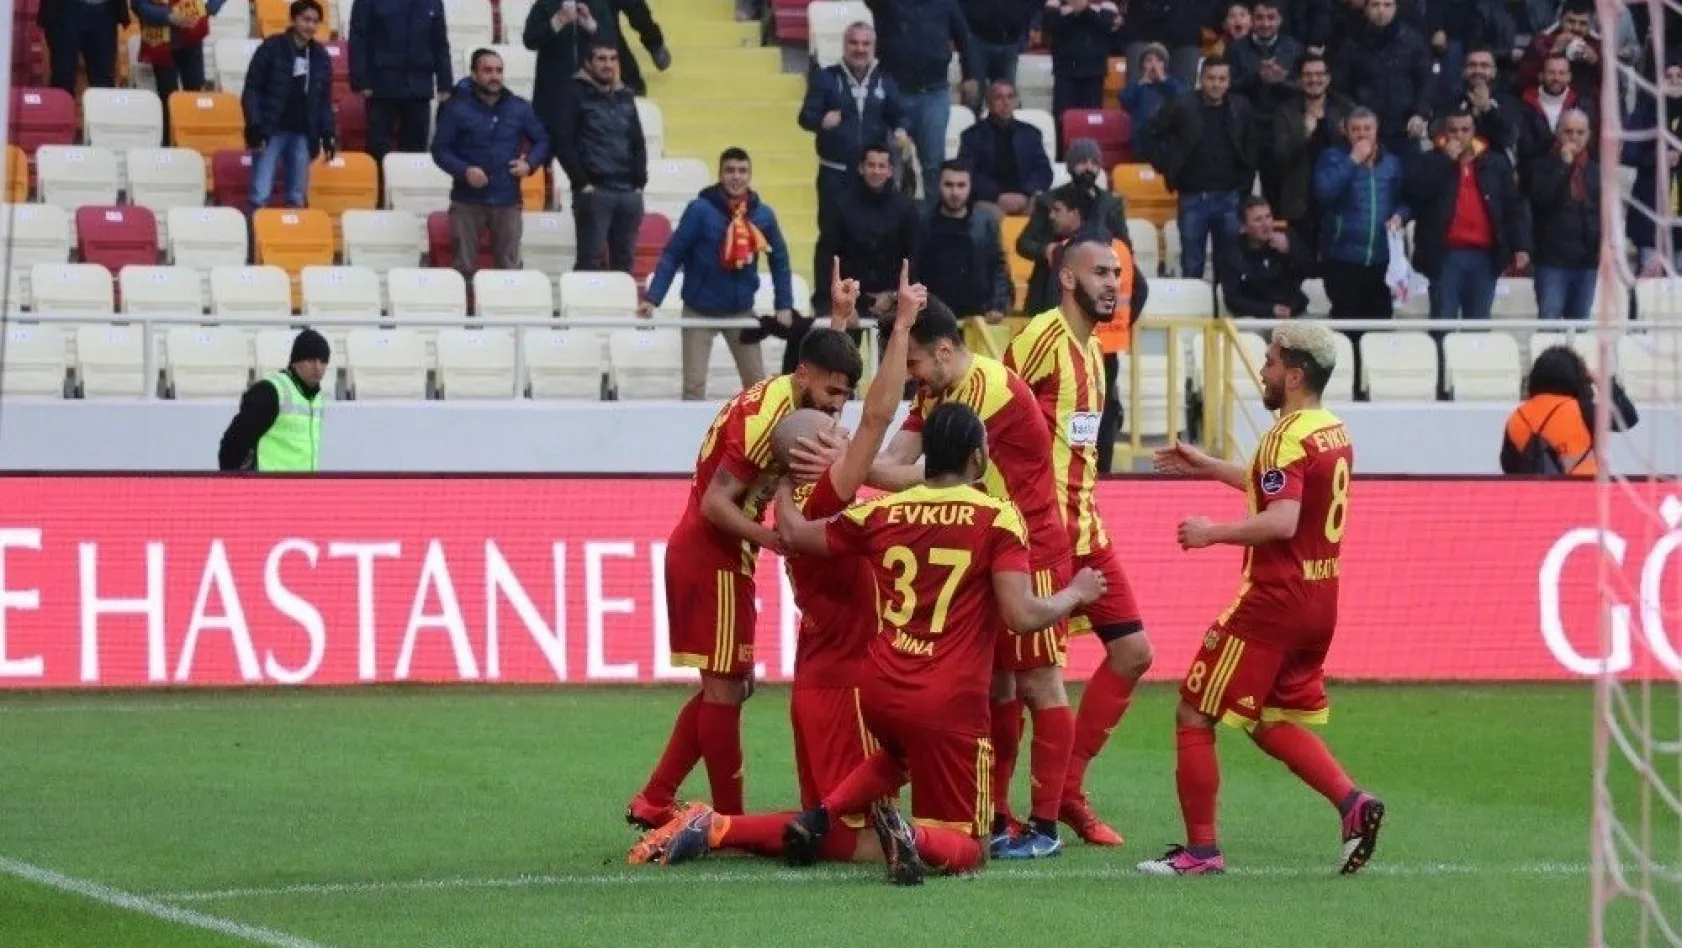 Evkur Yeni Malatyaspor'da galibiyet özlemi sona erdi
